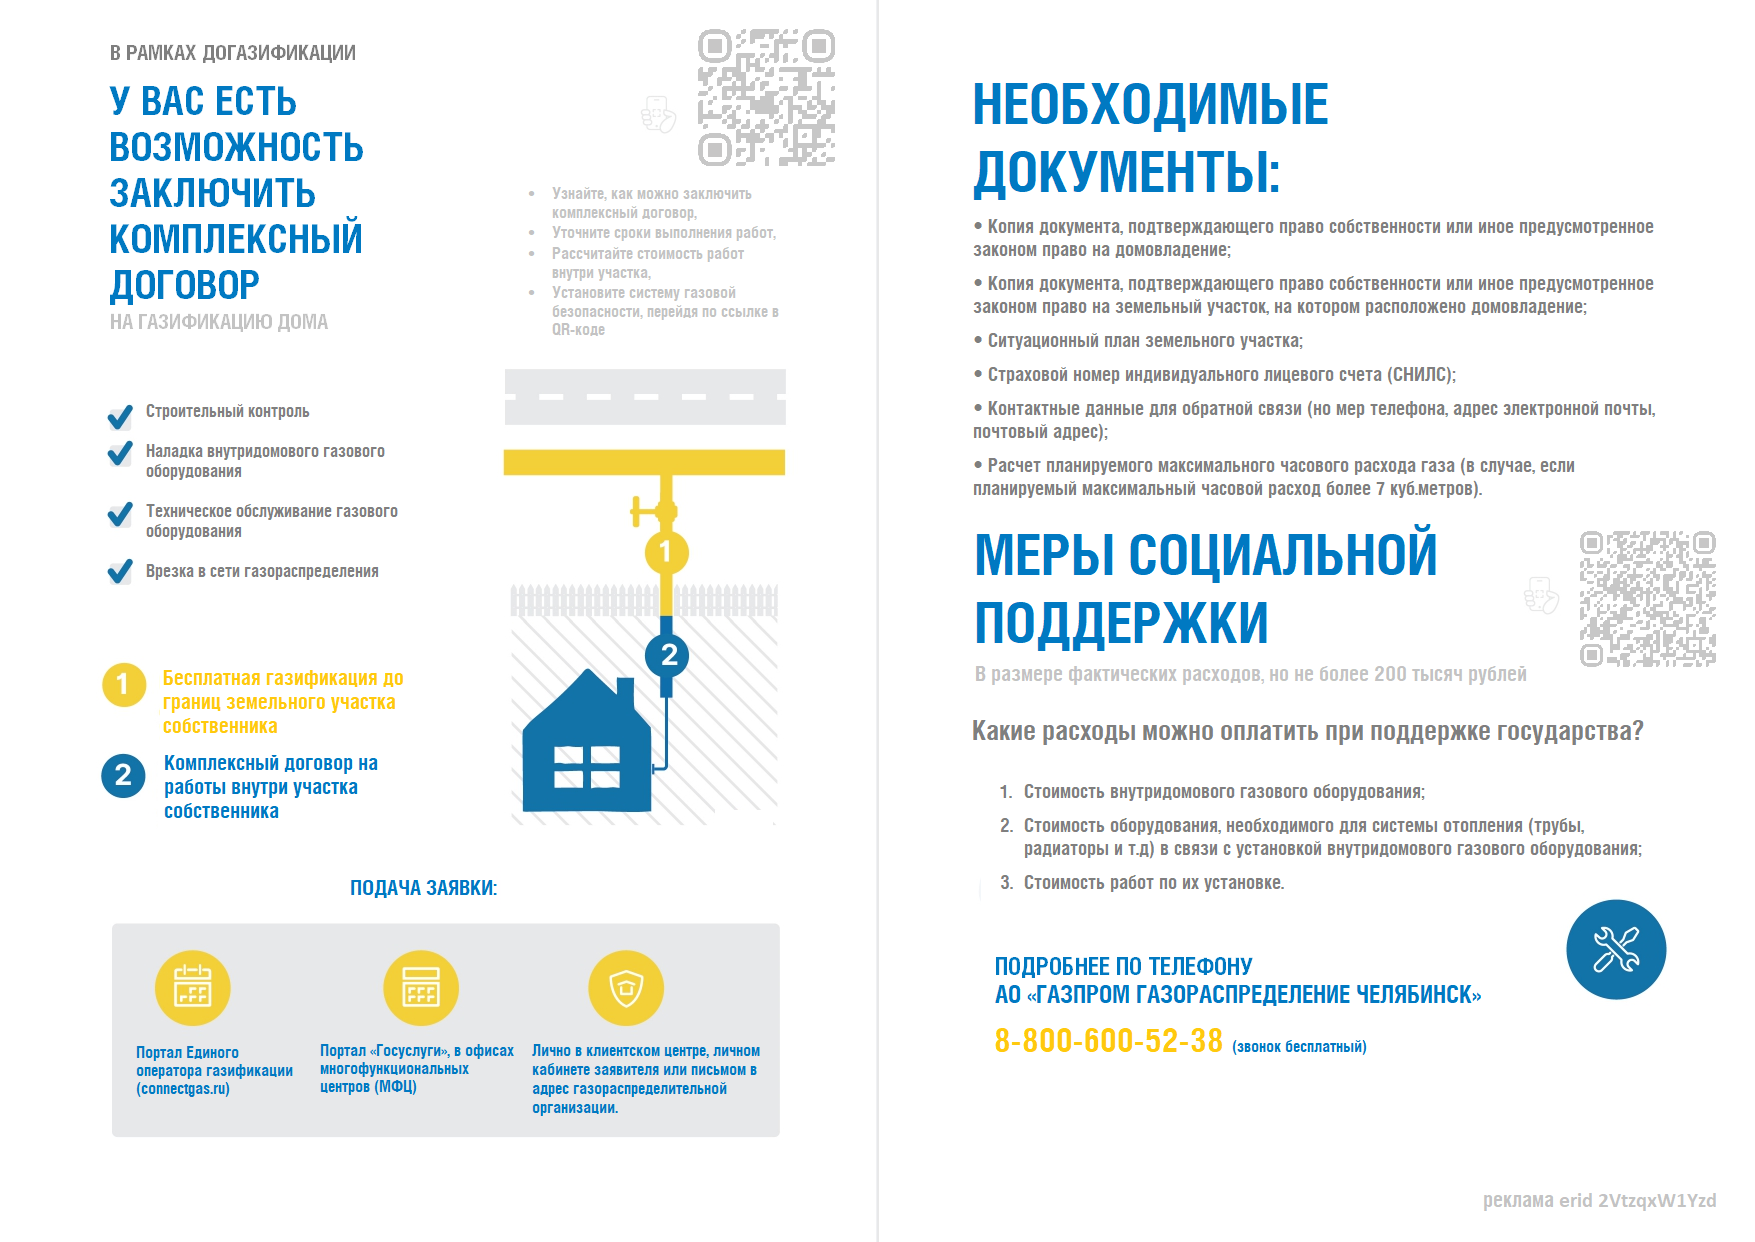 АО «Газпром газораспределение Челябинск» информирует!  